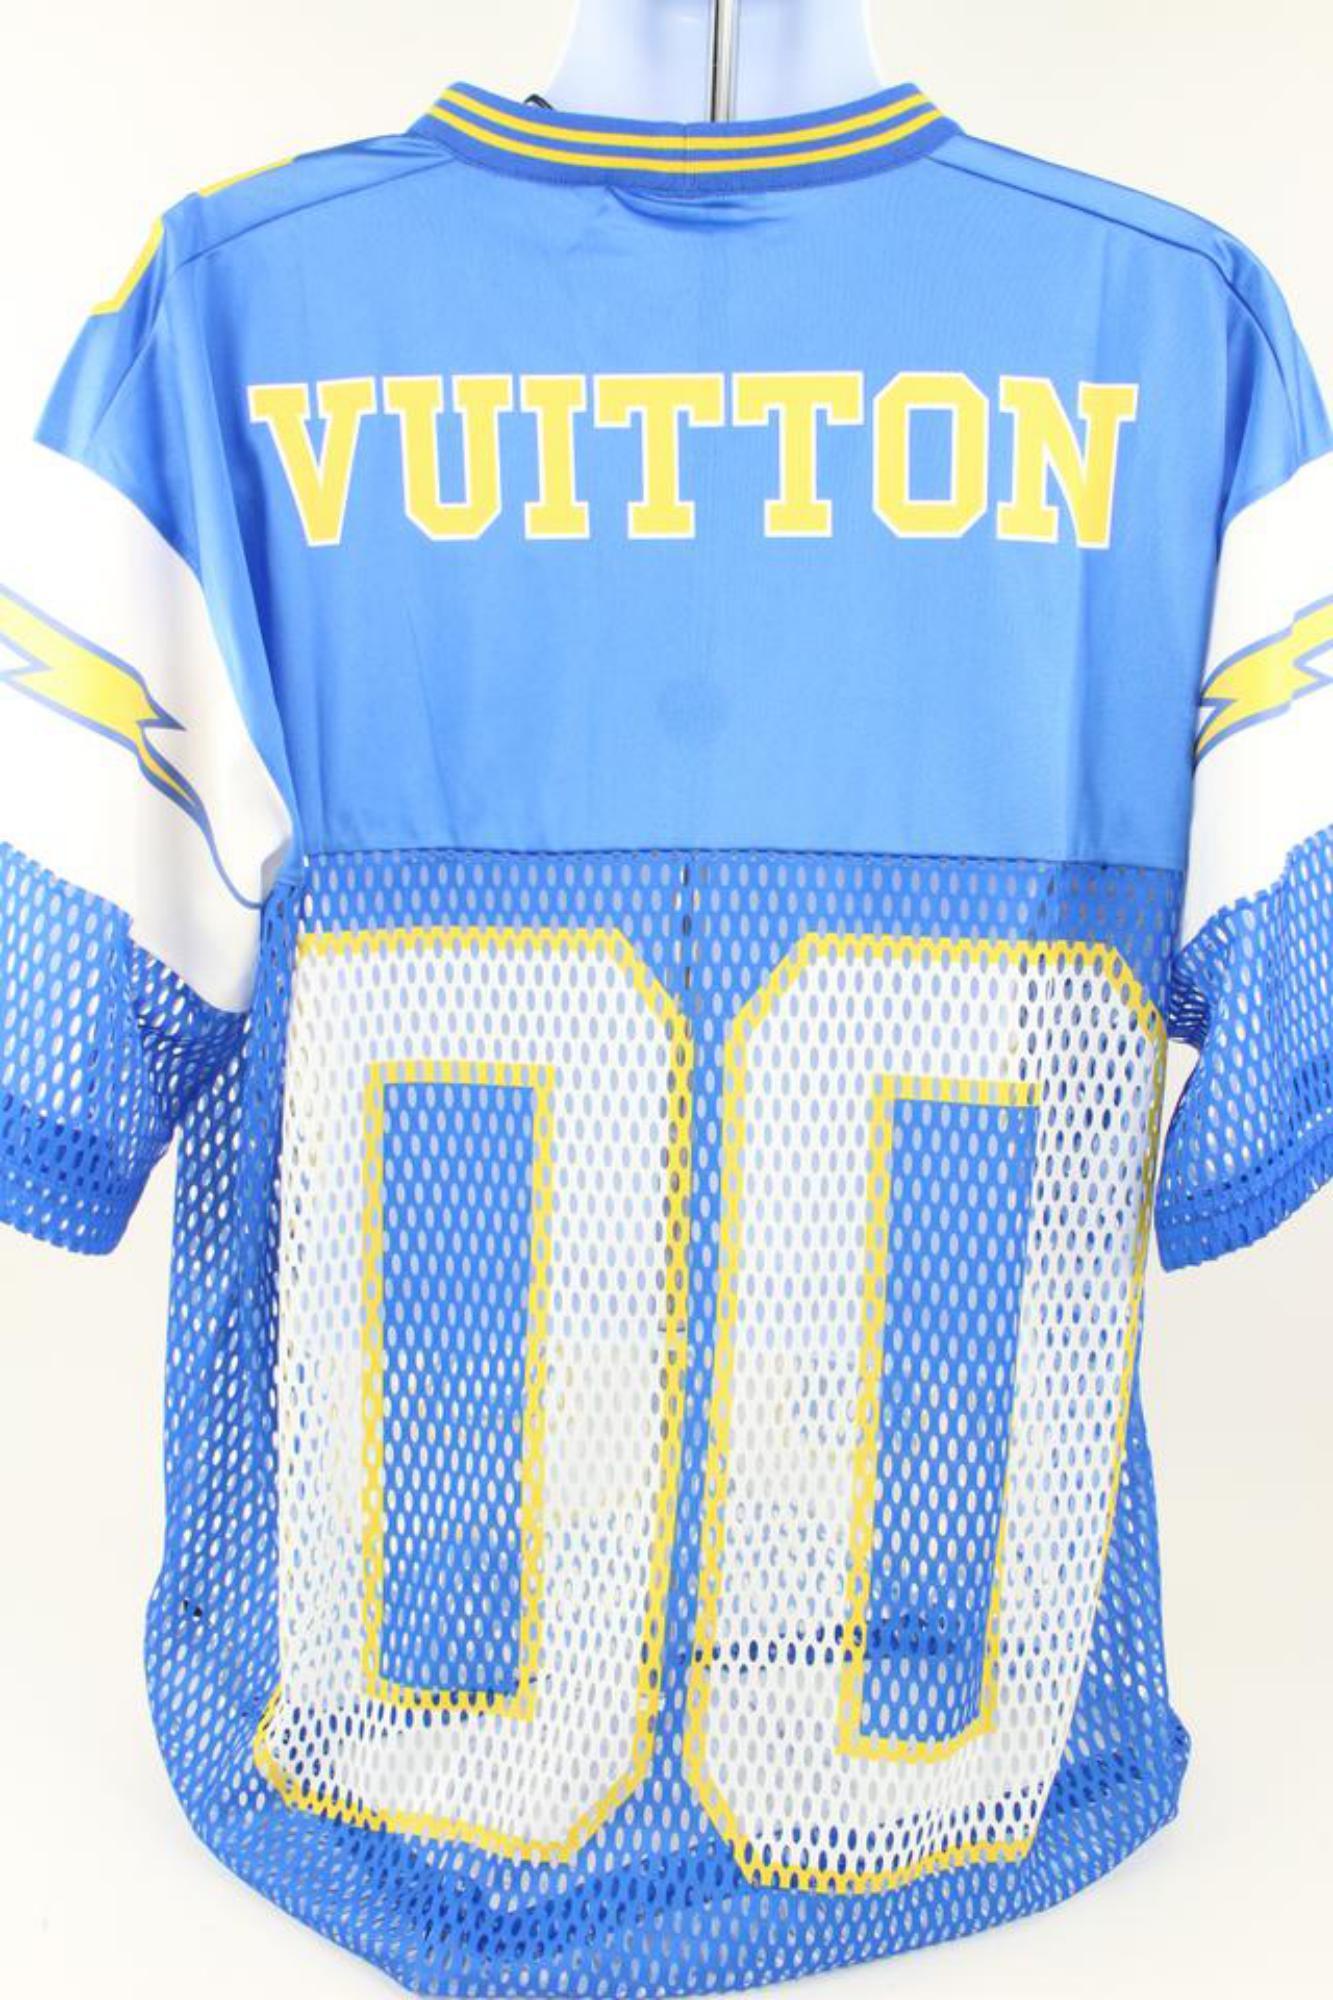 Louis Vuitton Men XXL Virgil Abloh Mesh Sporty Jersey Patch Sports Tee Shirt 118 2